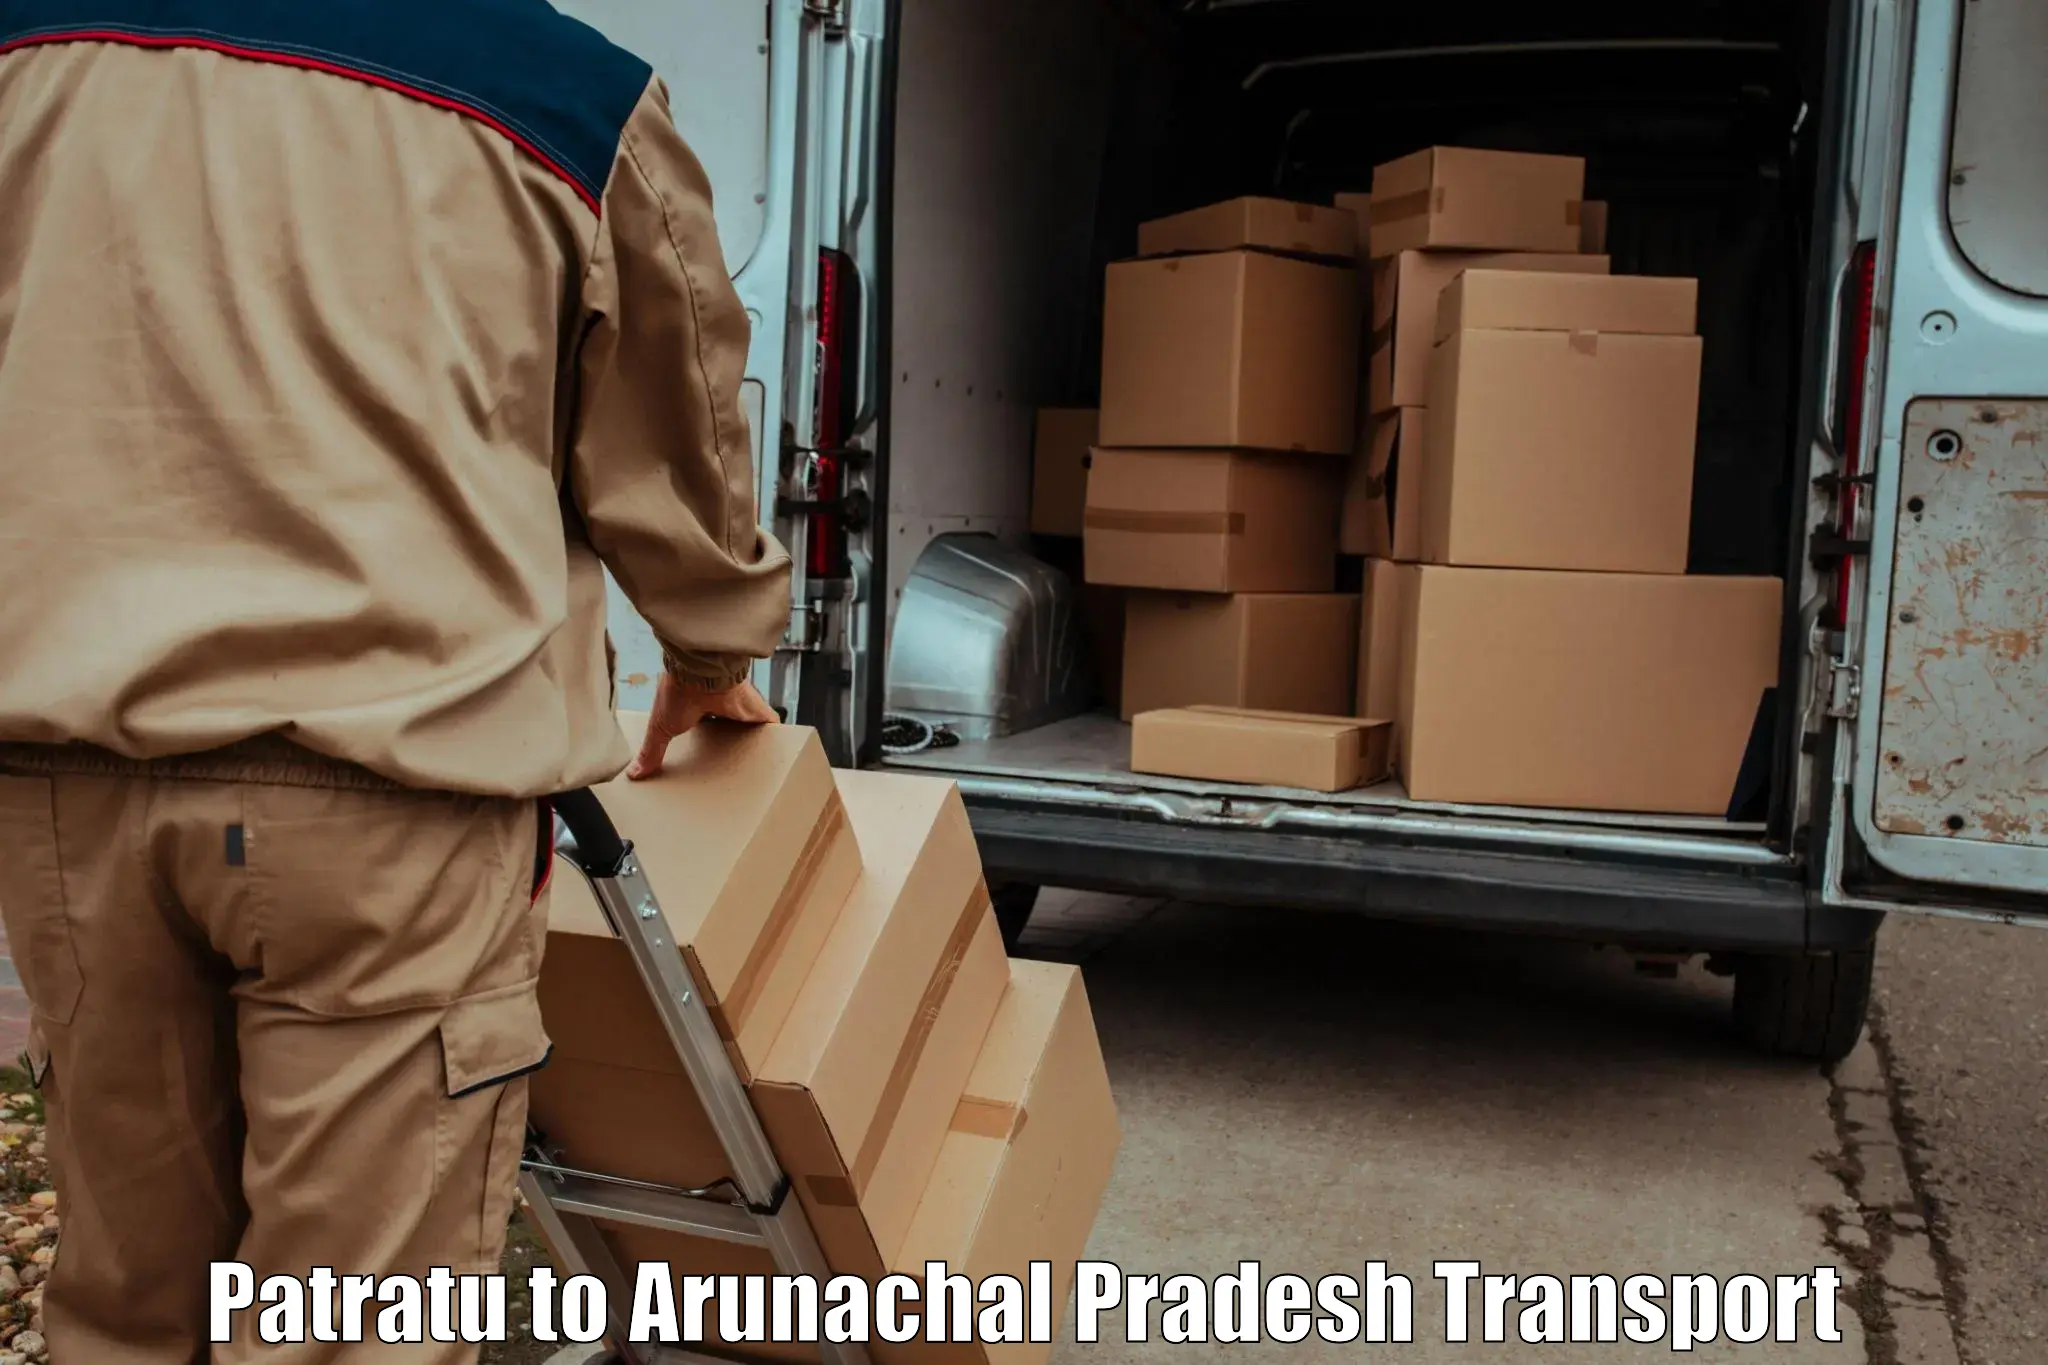 Online transport service Patratu to Arunachal Pradesh